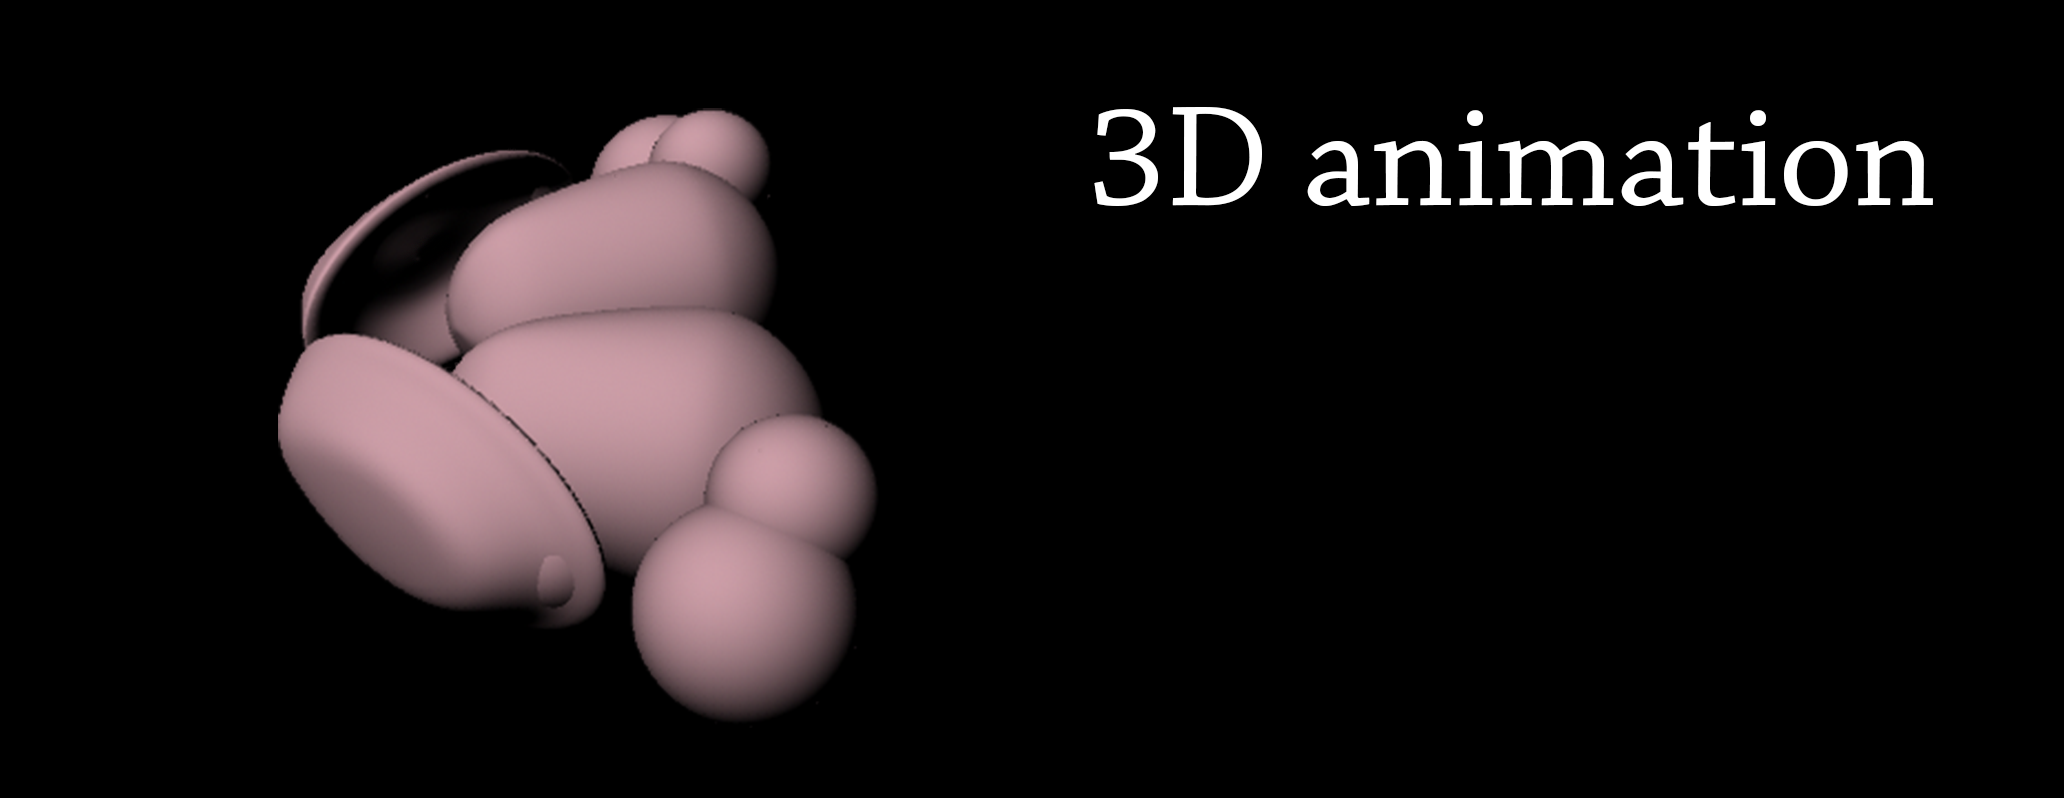 Cervello: ultimo scatto di un'animazione 3D per localizzare il nucleo reticolare talamico